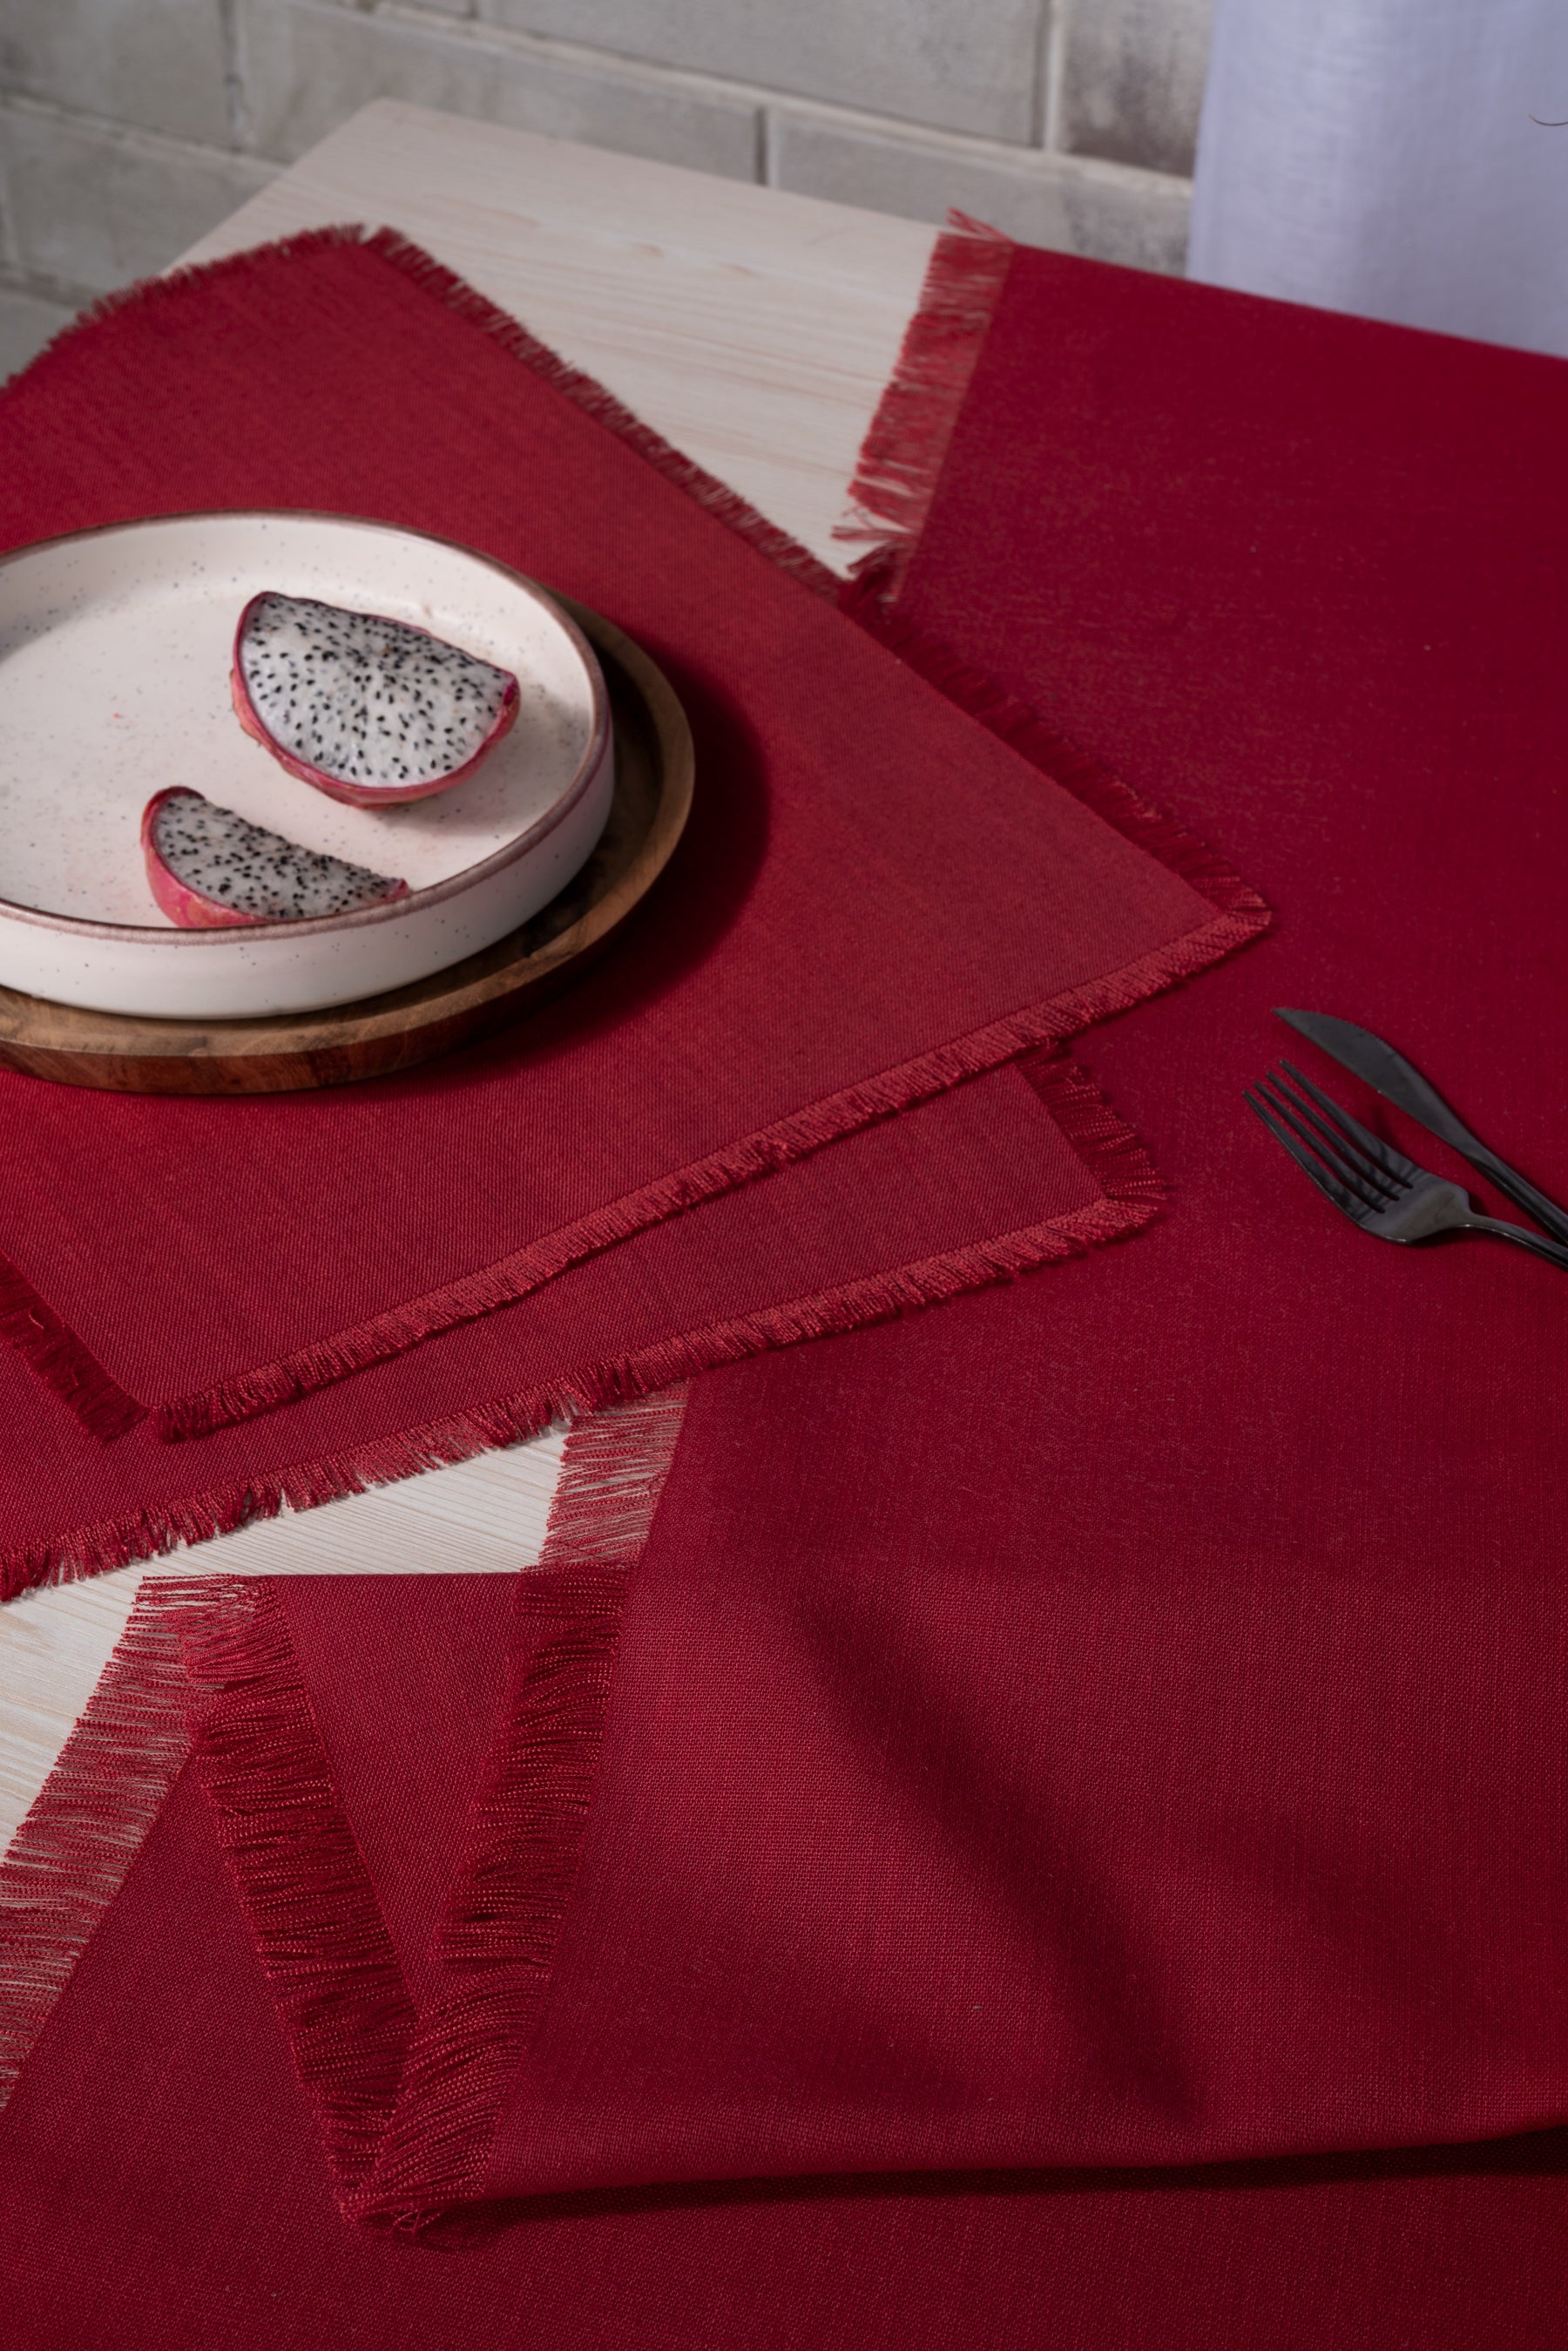 Red Linen Textured Table Runner - Fringe